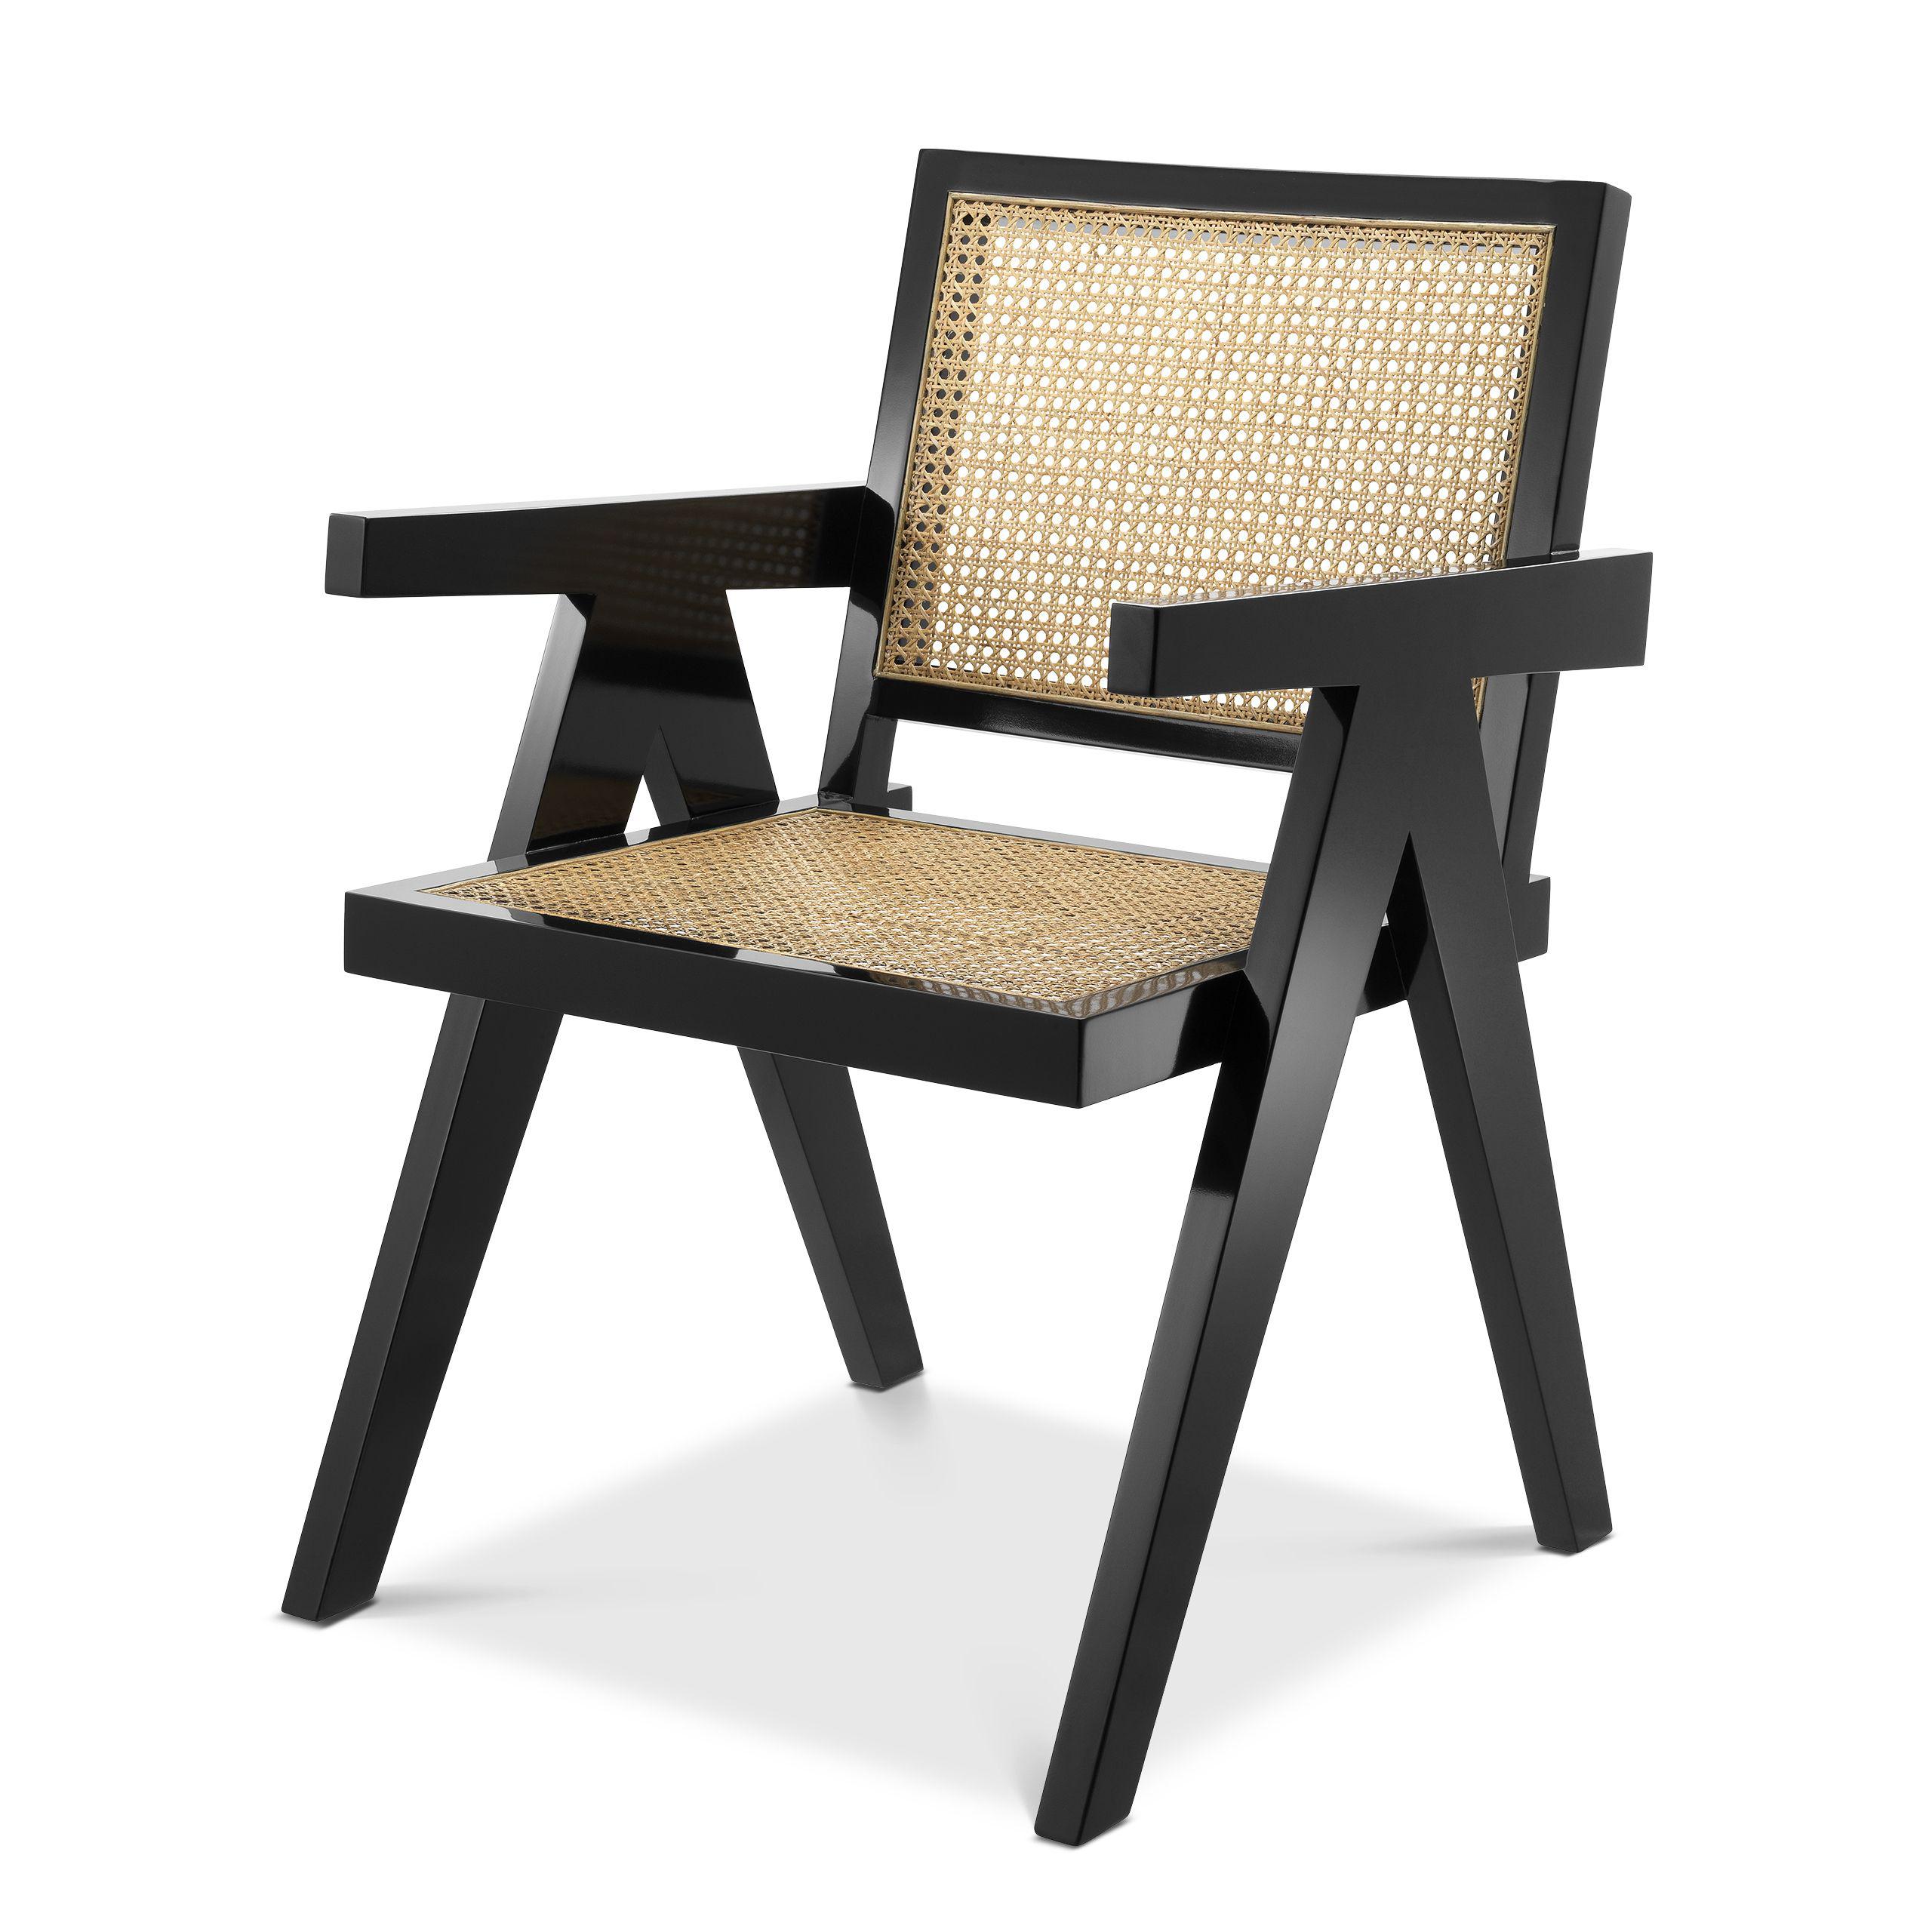 Купить Стул без подлокотника Dining Chair Adagio в интернет-магазине roooms.ru